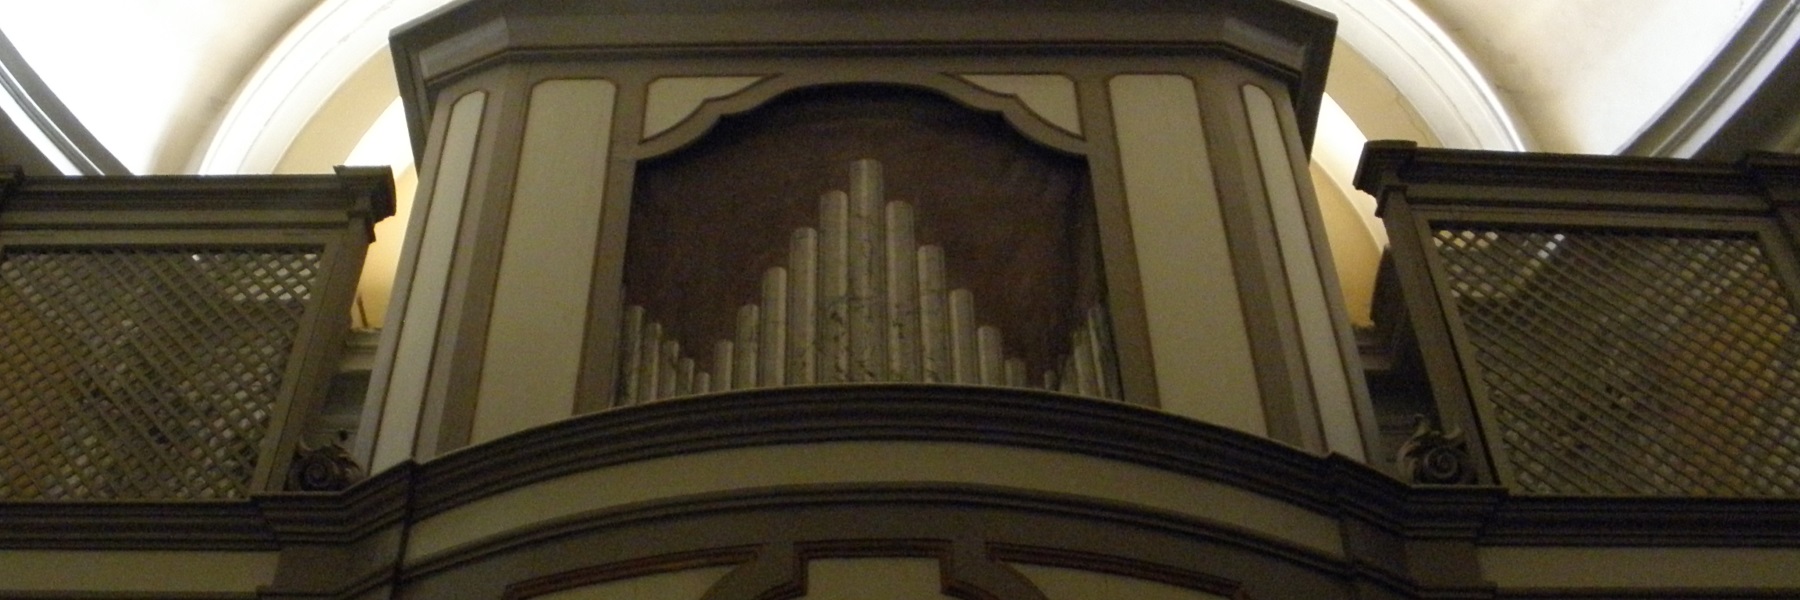 Die Orgel von Callido - Suffragio Kirche